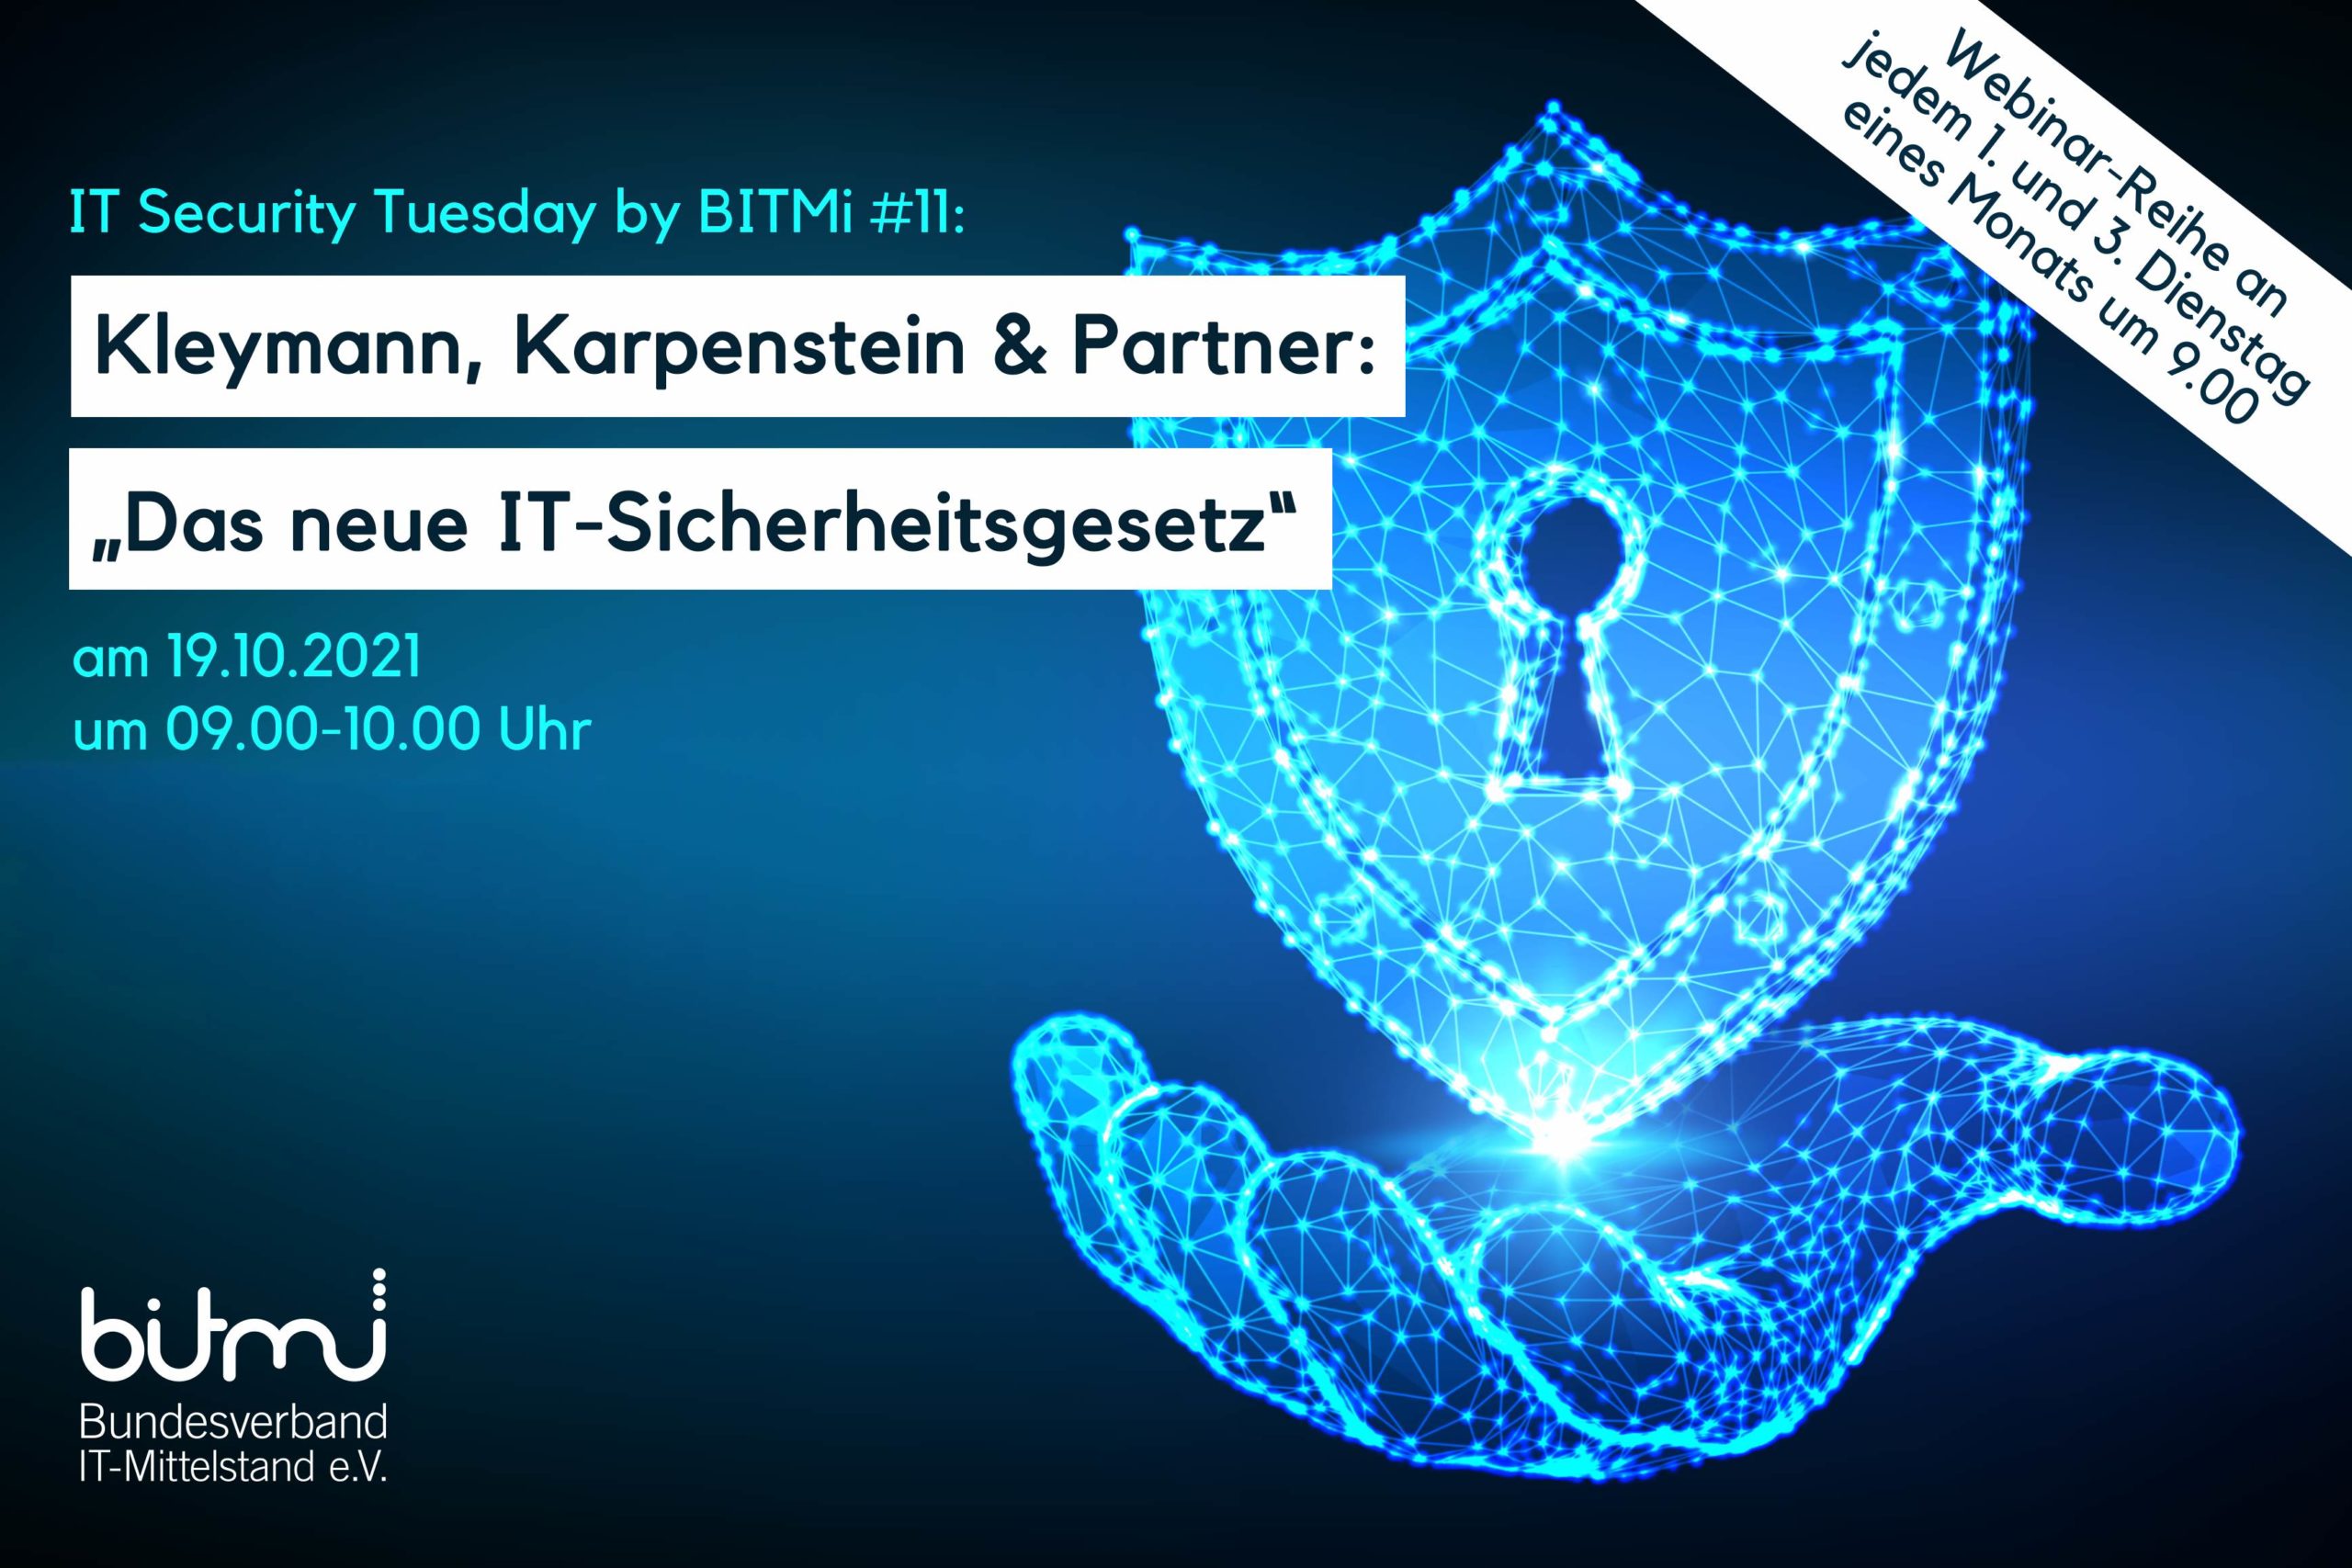 IT-Security Tuesday mit BITMi Mitglied Kleymann, Karpenstein & Partner: „Das neue IT-Sicherheitsgesetz“ (Update)